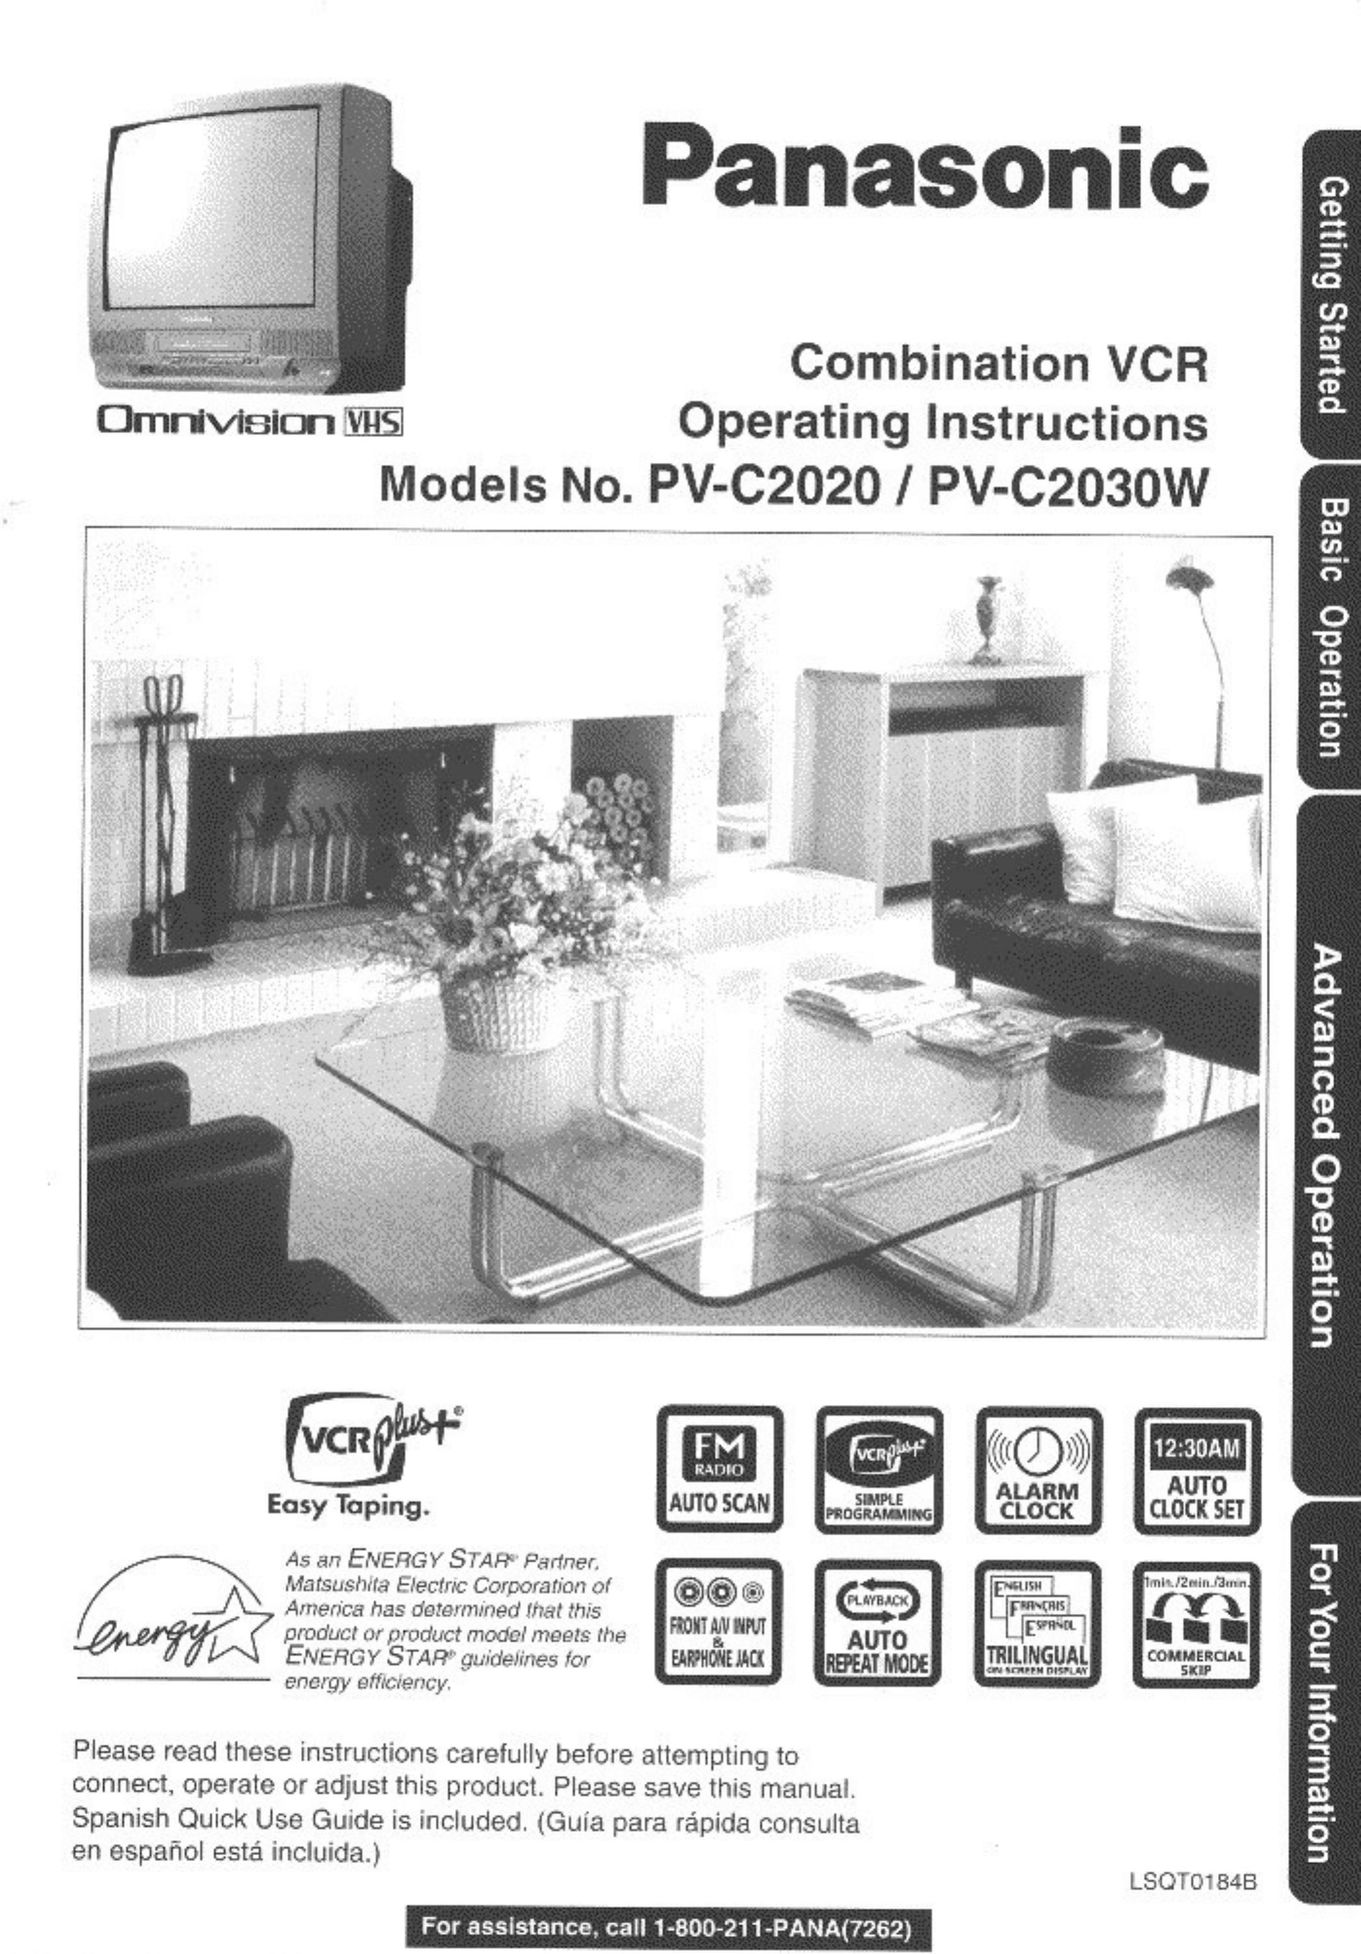 Panasonic PV C2020 TV VCR Combo User Manual